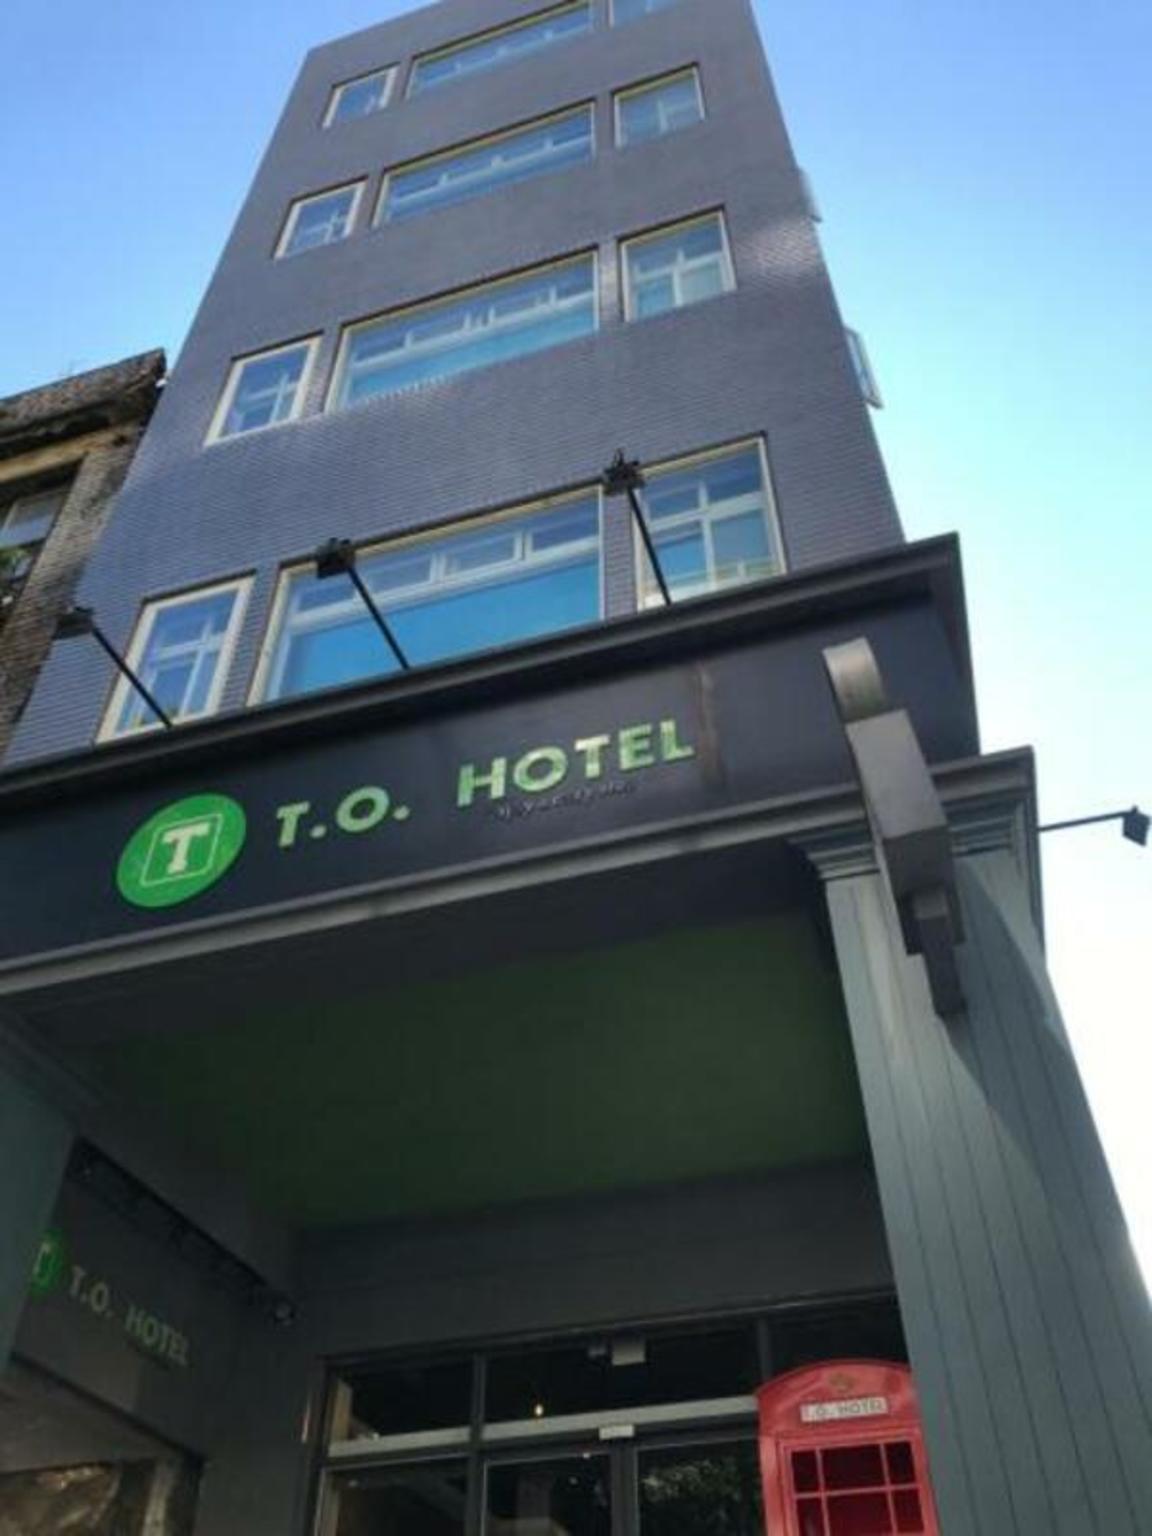 T.O. ホテル 写真